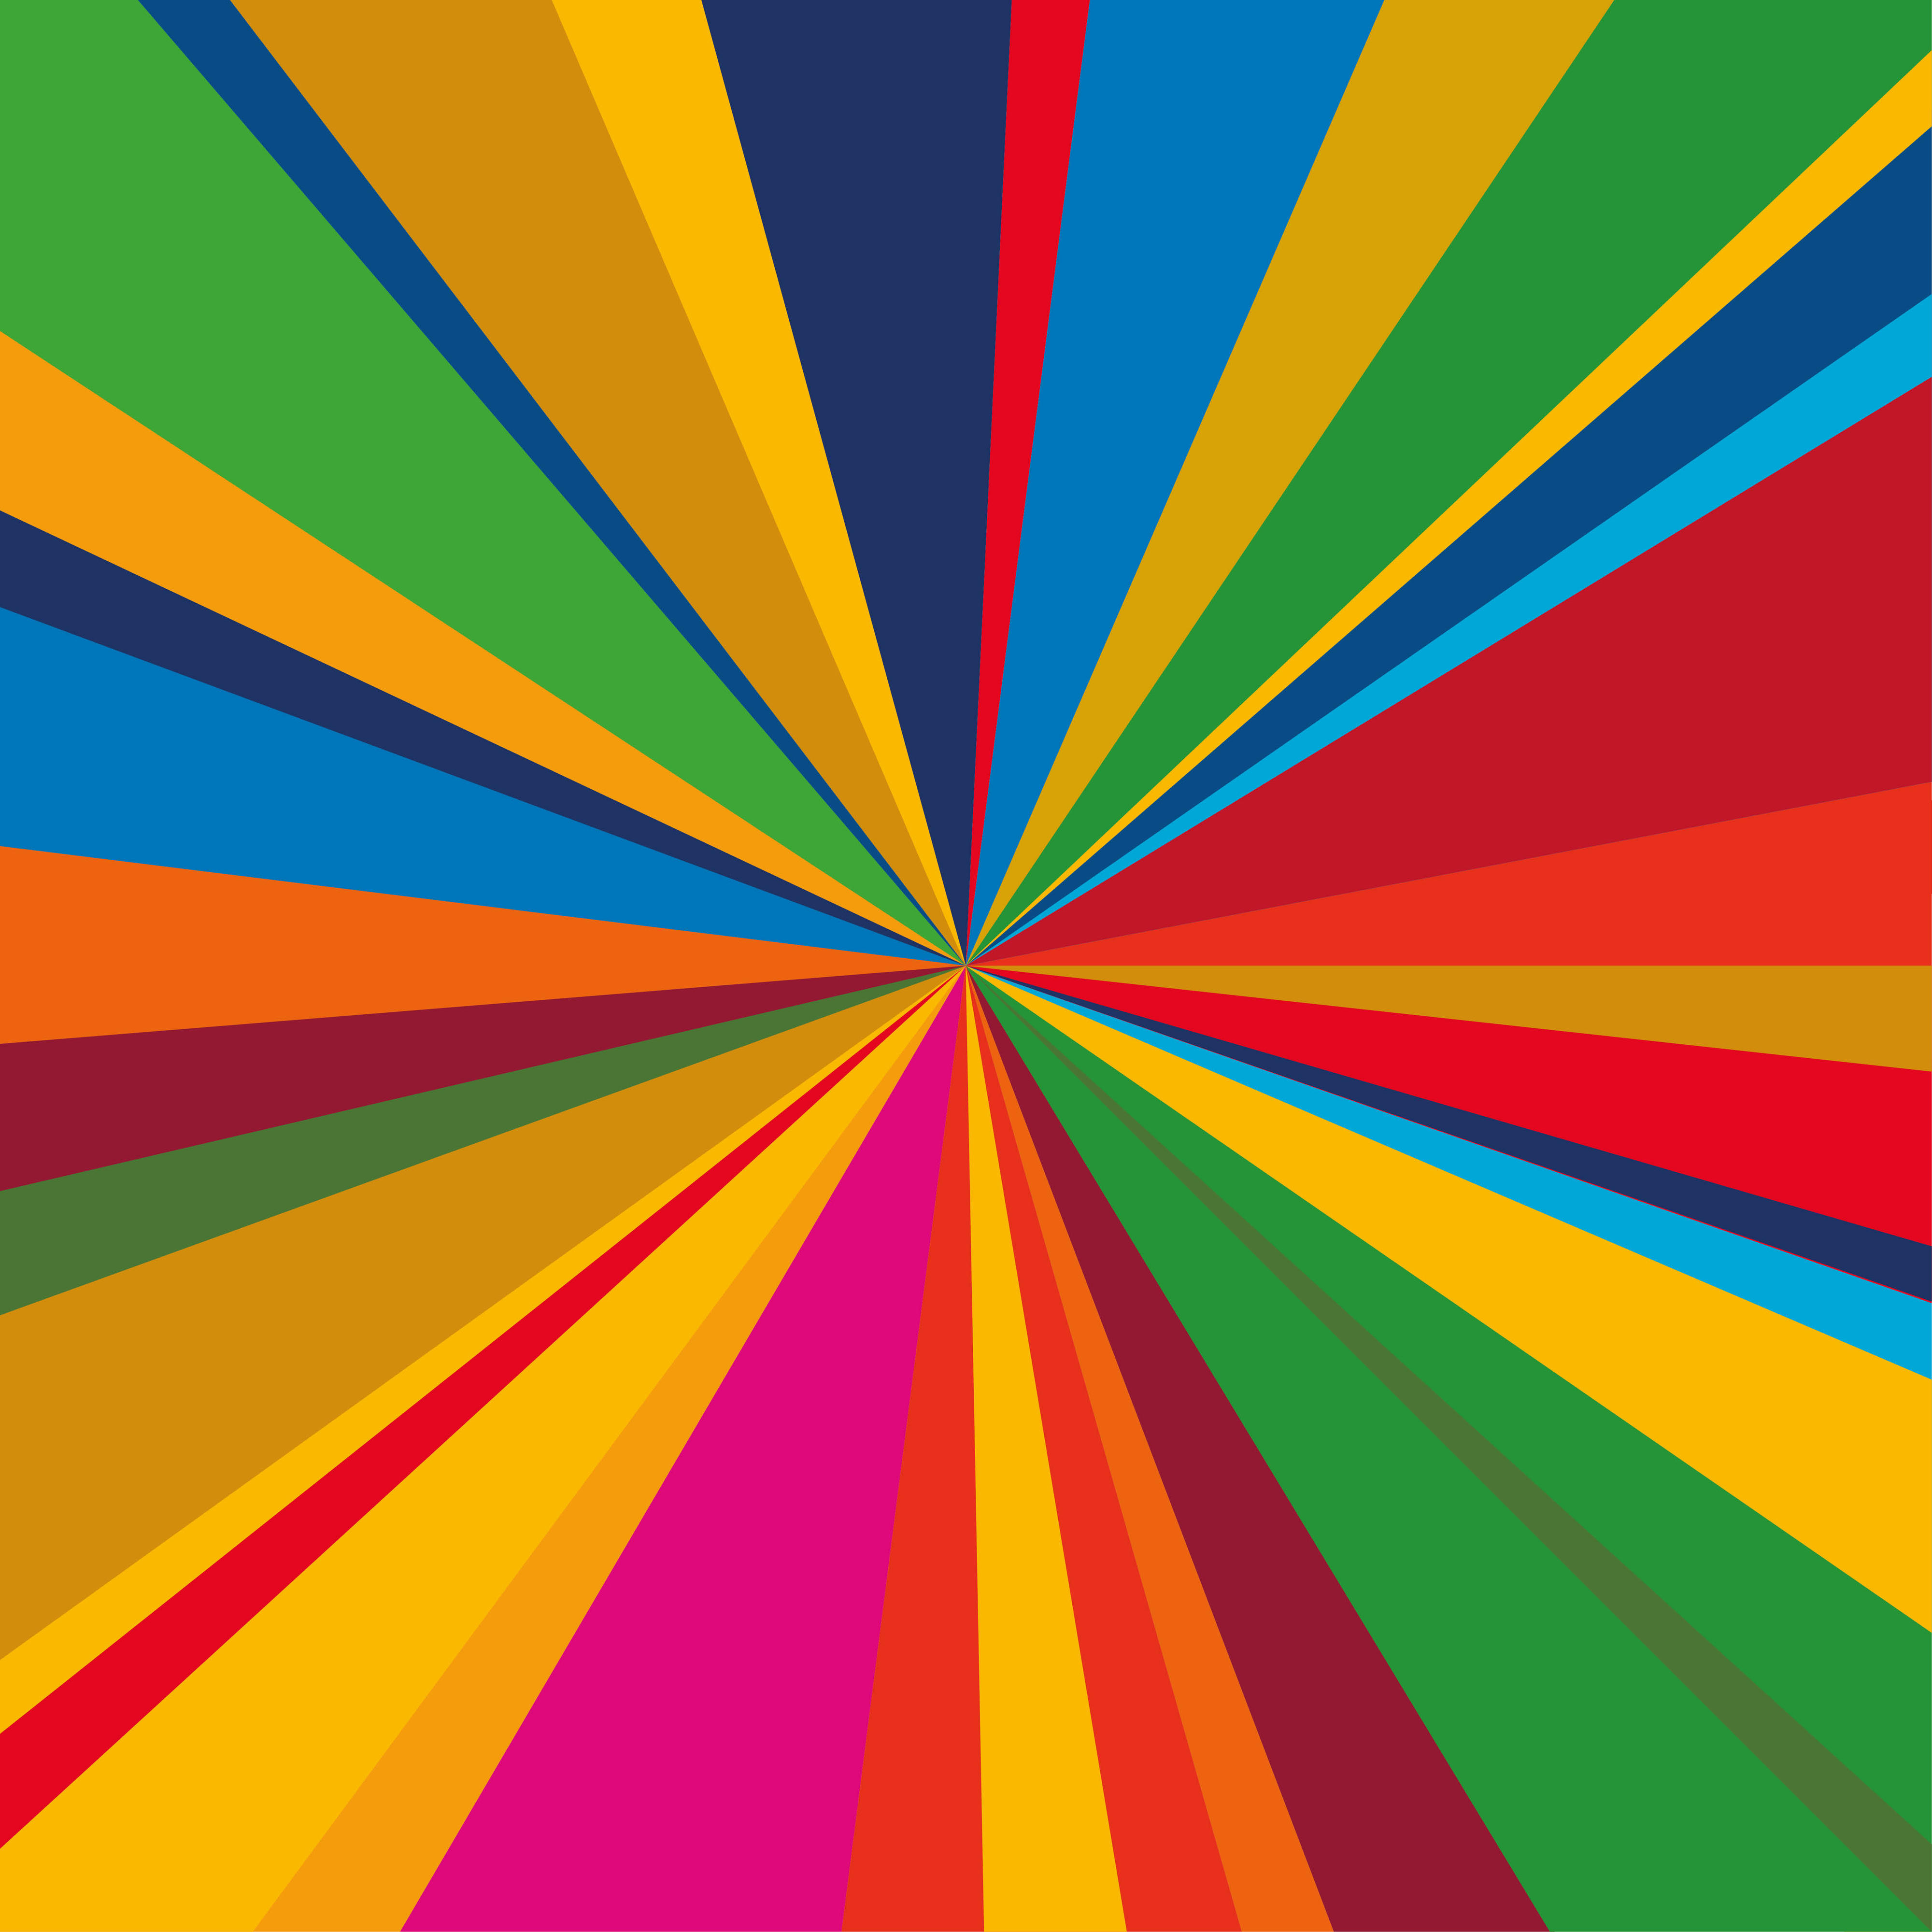 Farbwirbel mit Farben der 17 Ziele für nachhaltige Entwicklung